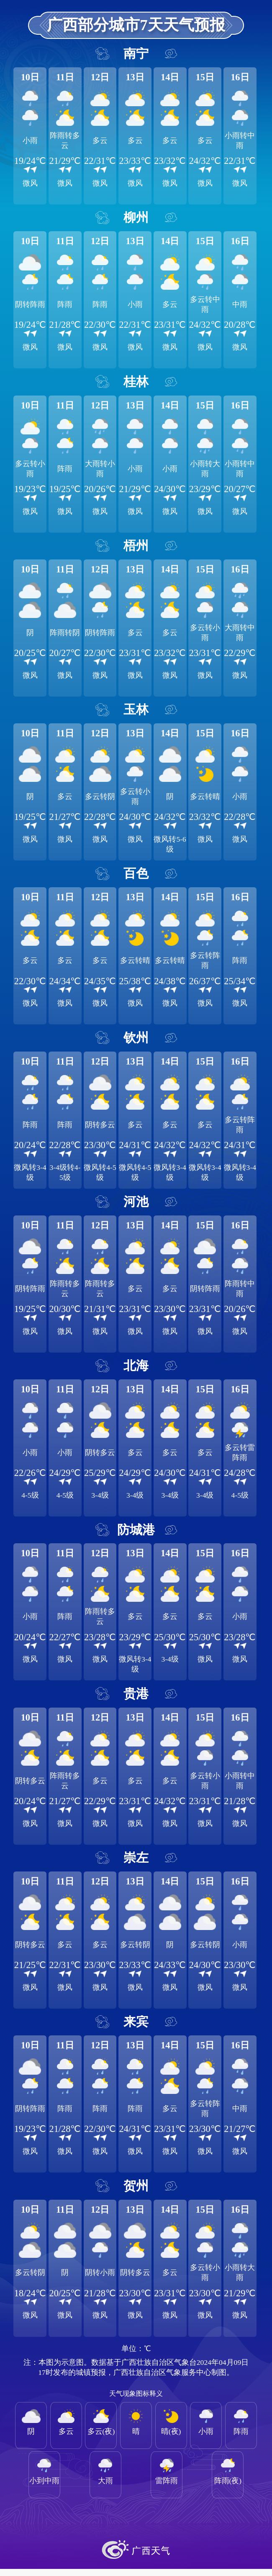 广西部分城市7天天气预报北部湾海面:今天晚上到明天白天,阴天有小雨